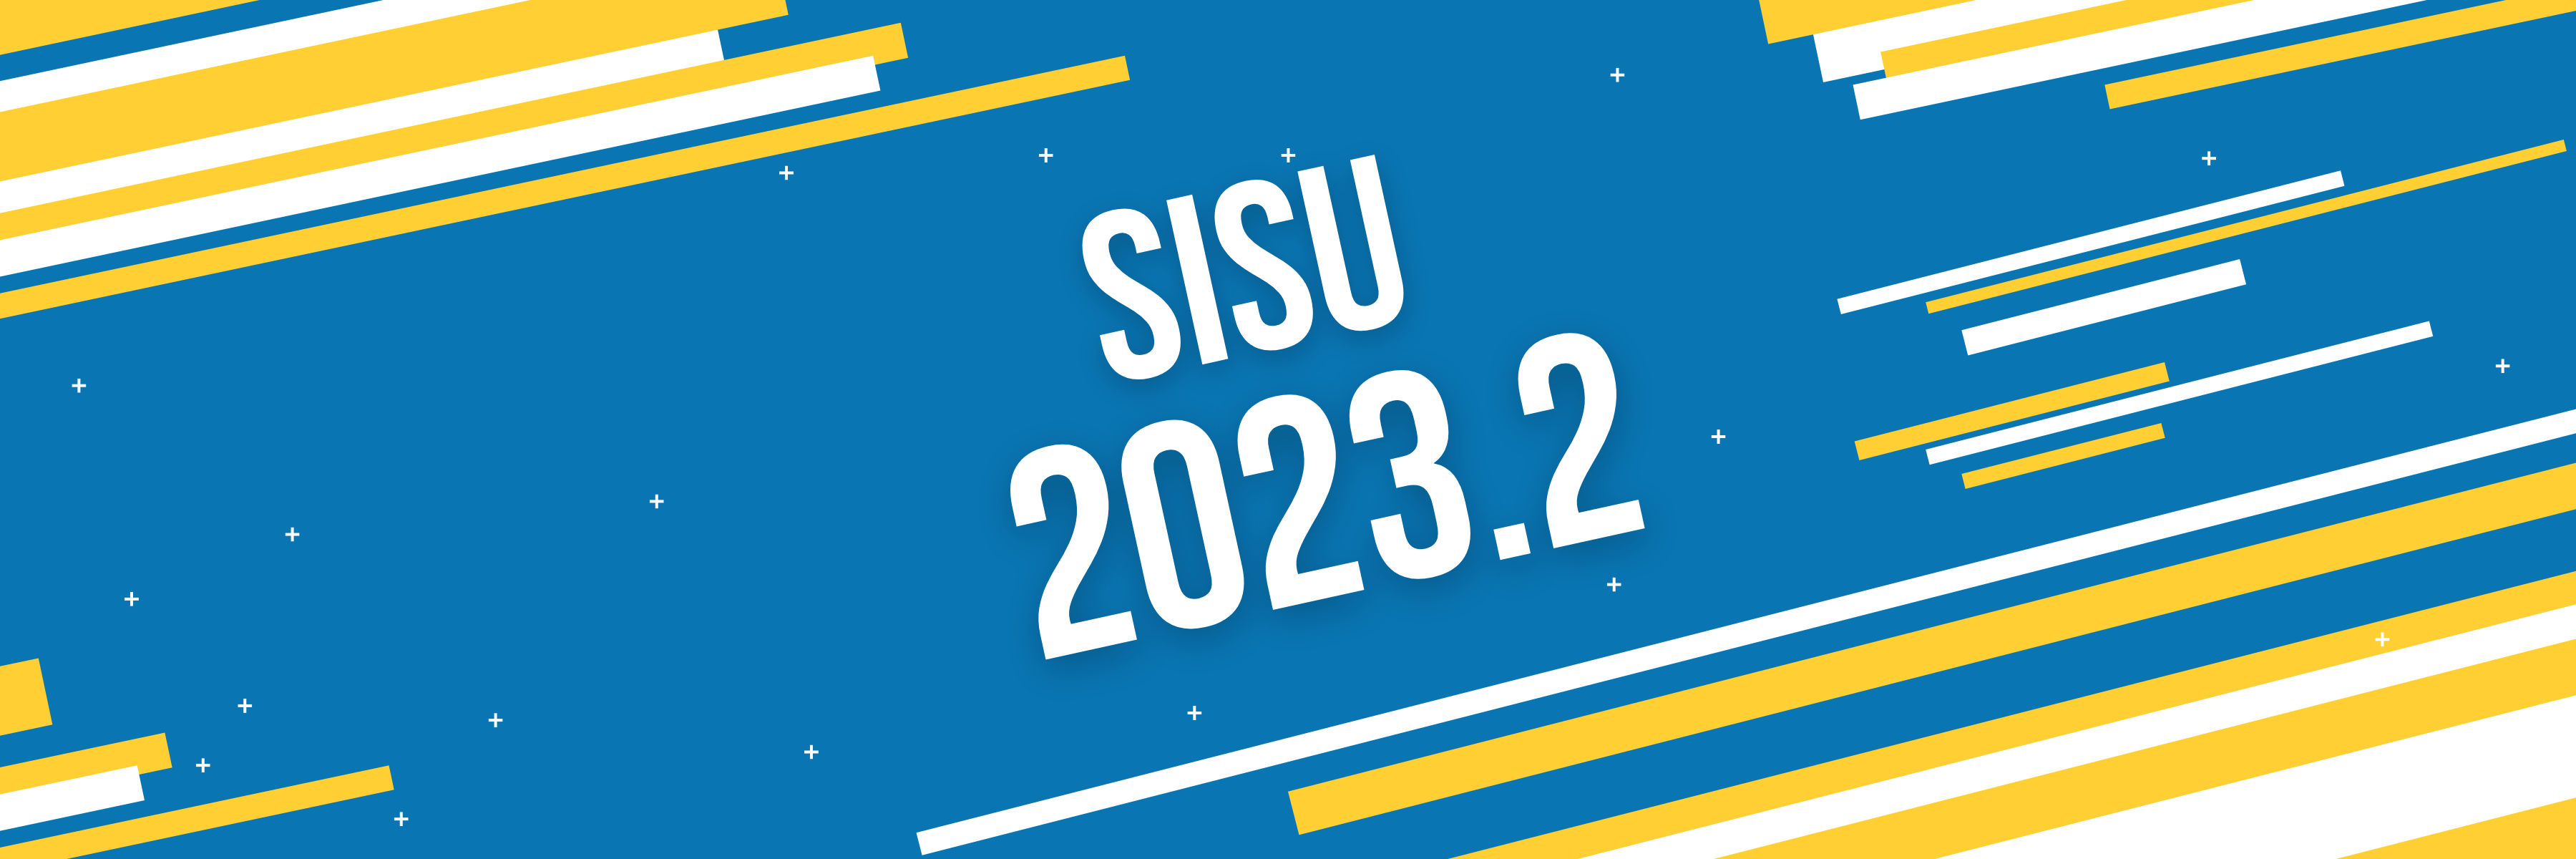 SiSU 2023: Campus divulga 2ª lista de convocação para